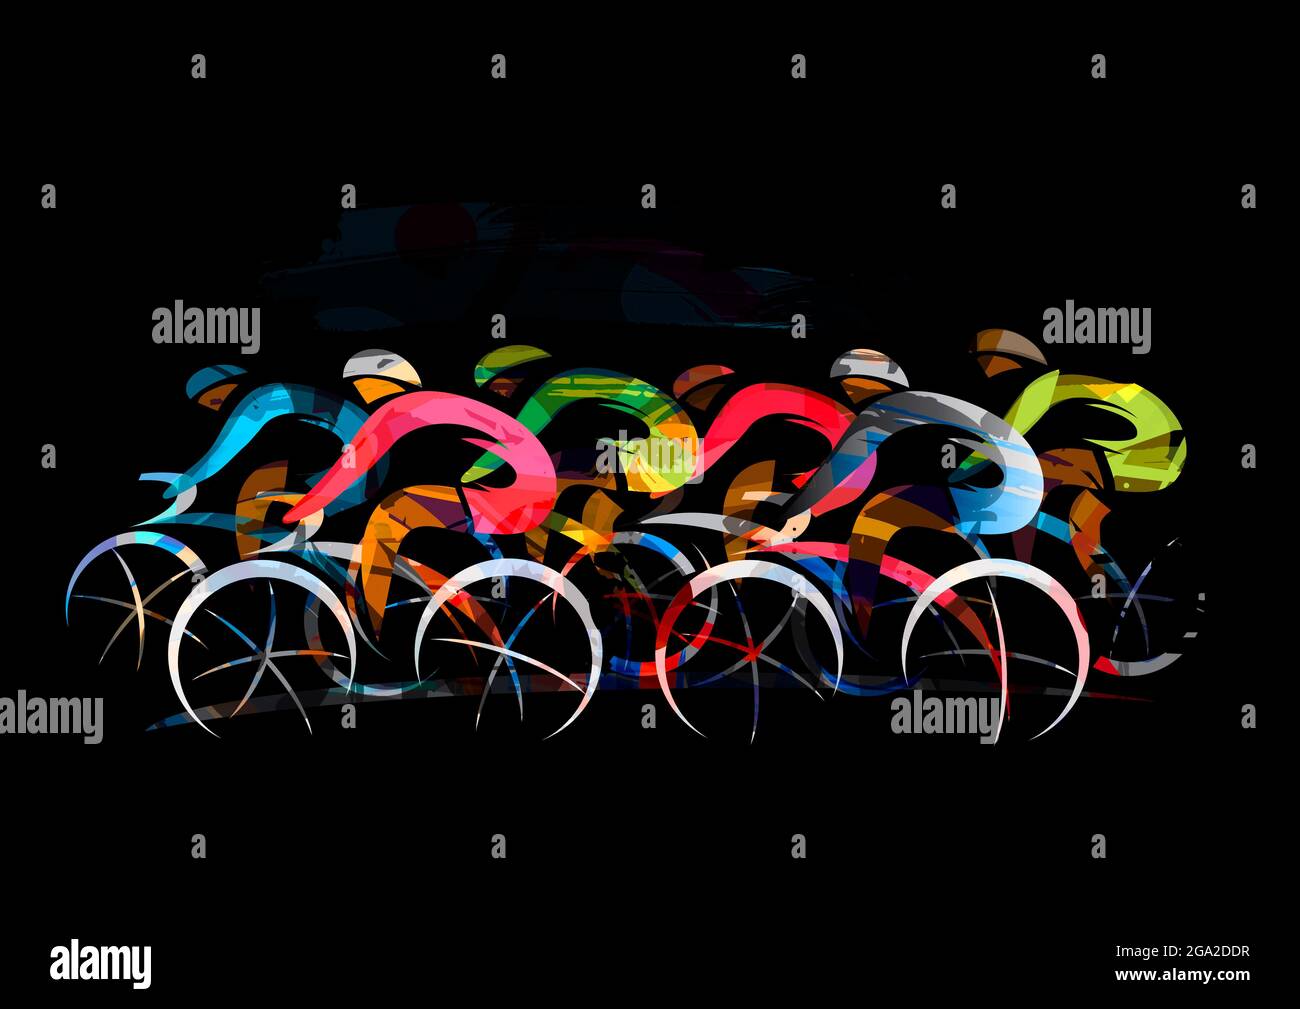 Corsa ciclistica, ciclismo su strada. Illustrazione espressiva dei ciclisti a piena velocità. Sfondo nero. Foto Stock